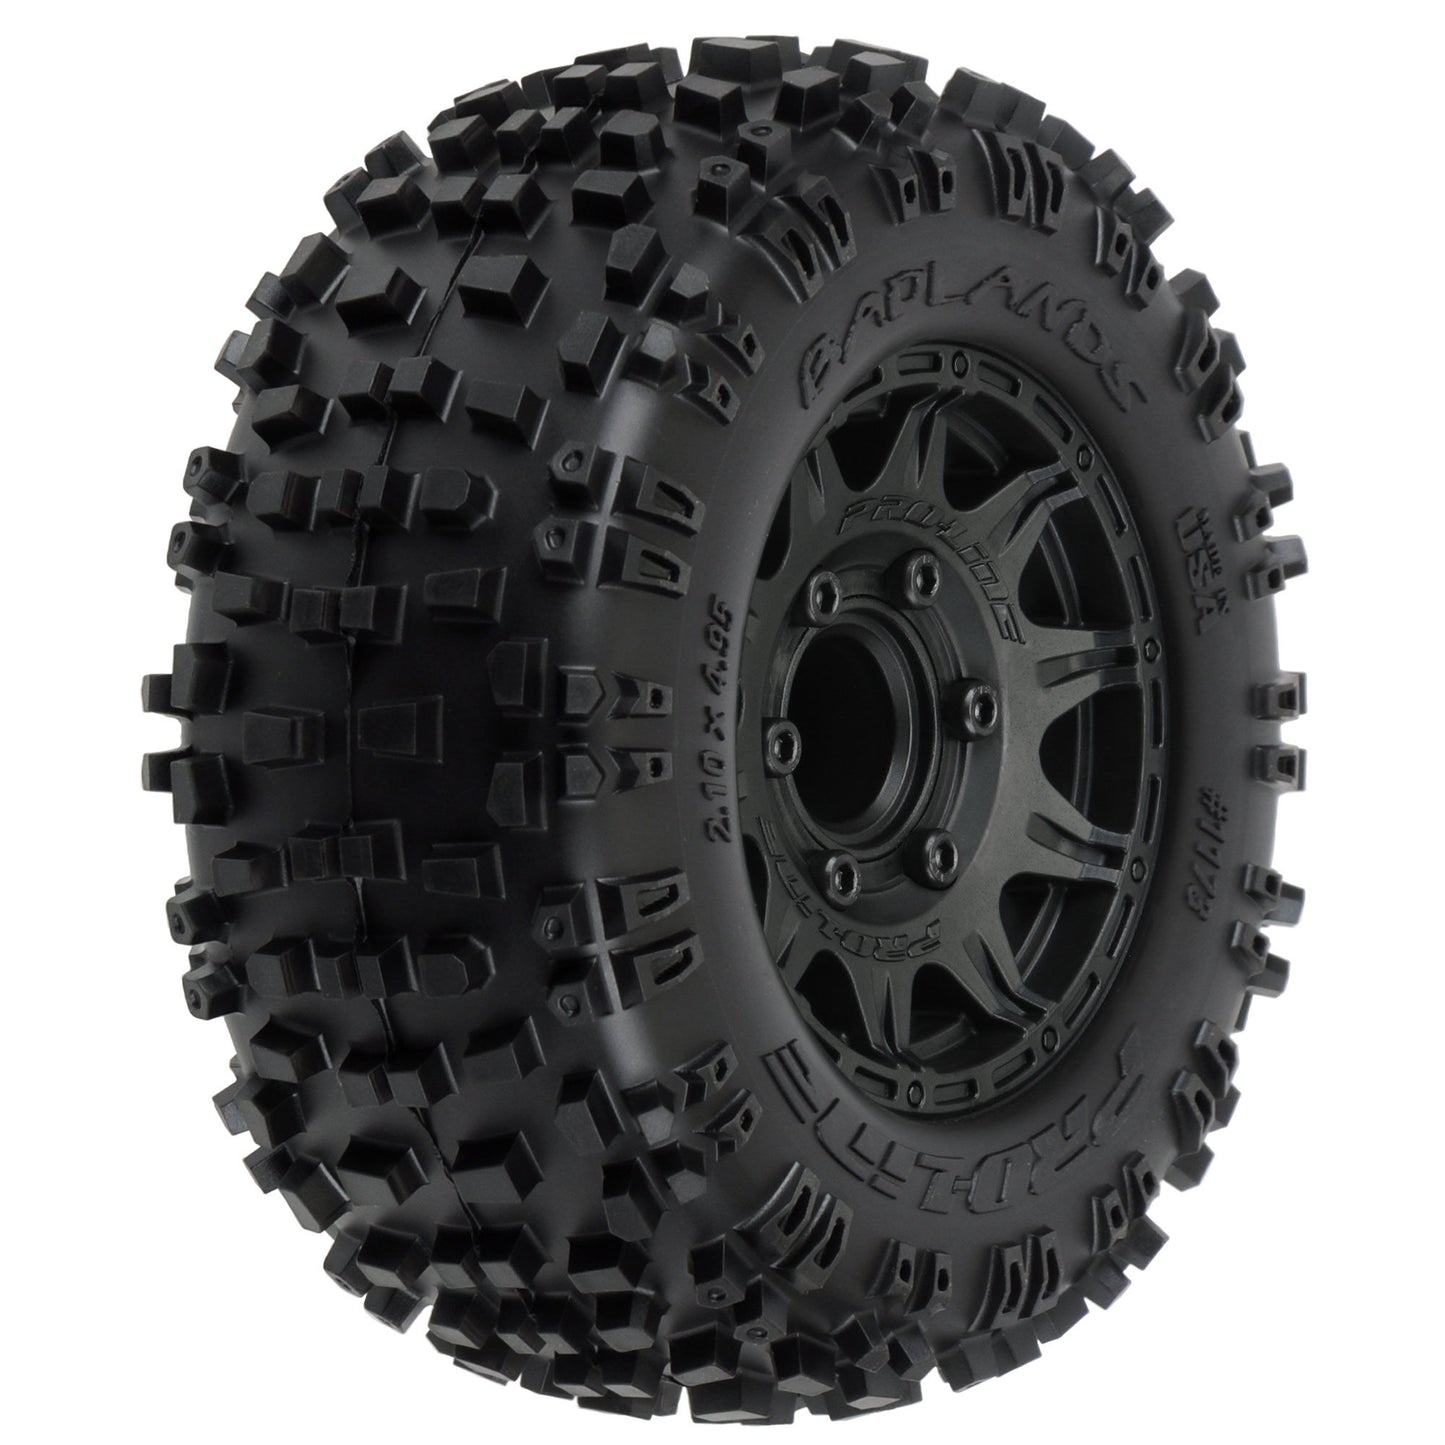 Pro-Line® 1/10 Badlands Front/Rear 2.8" MT Tires Mounted 12mm Blk Raid (2)